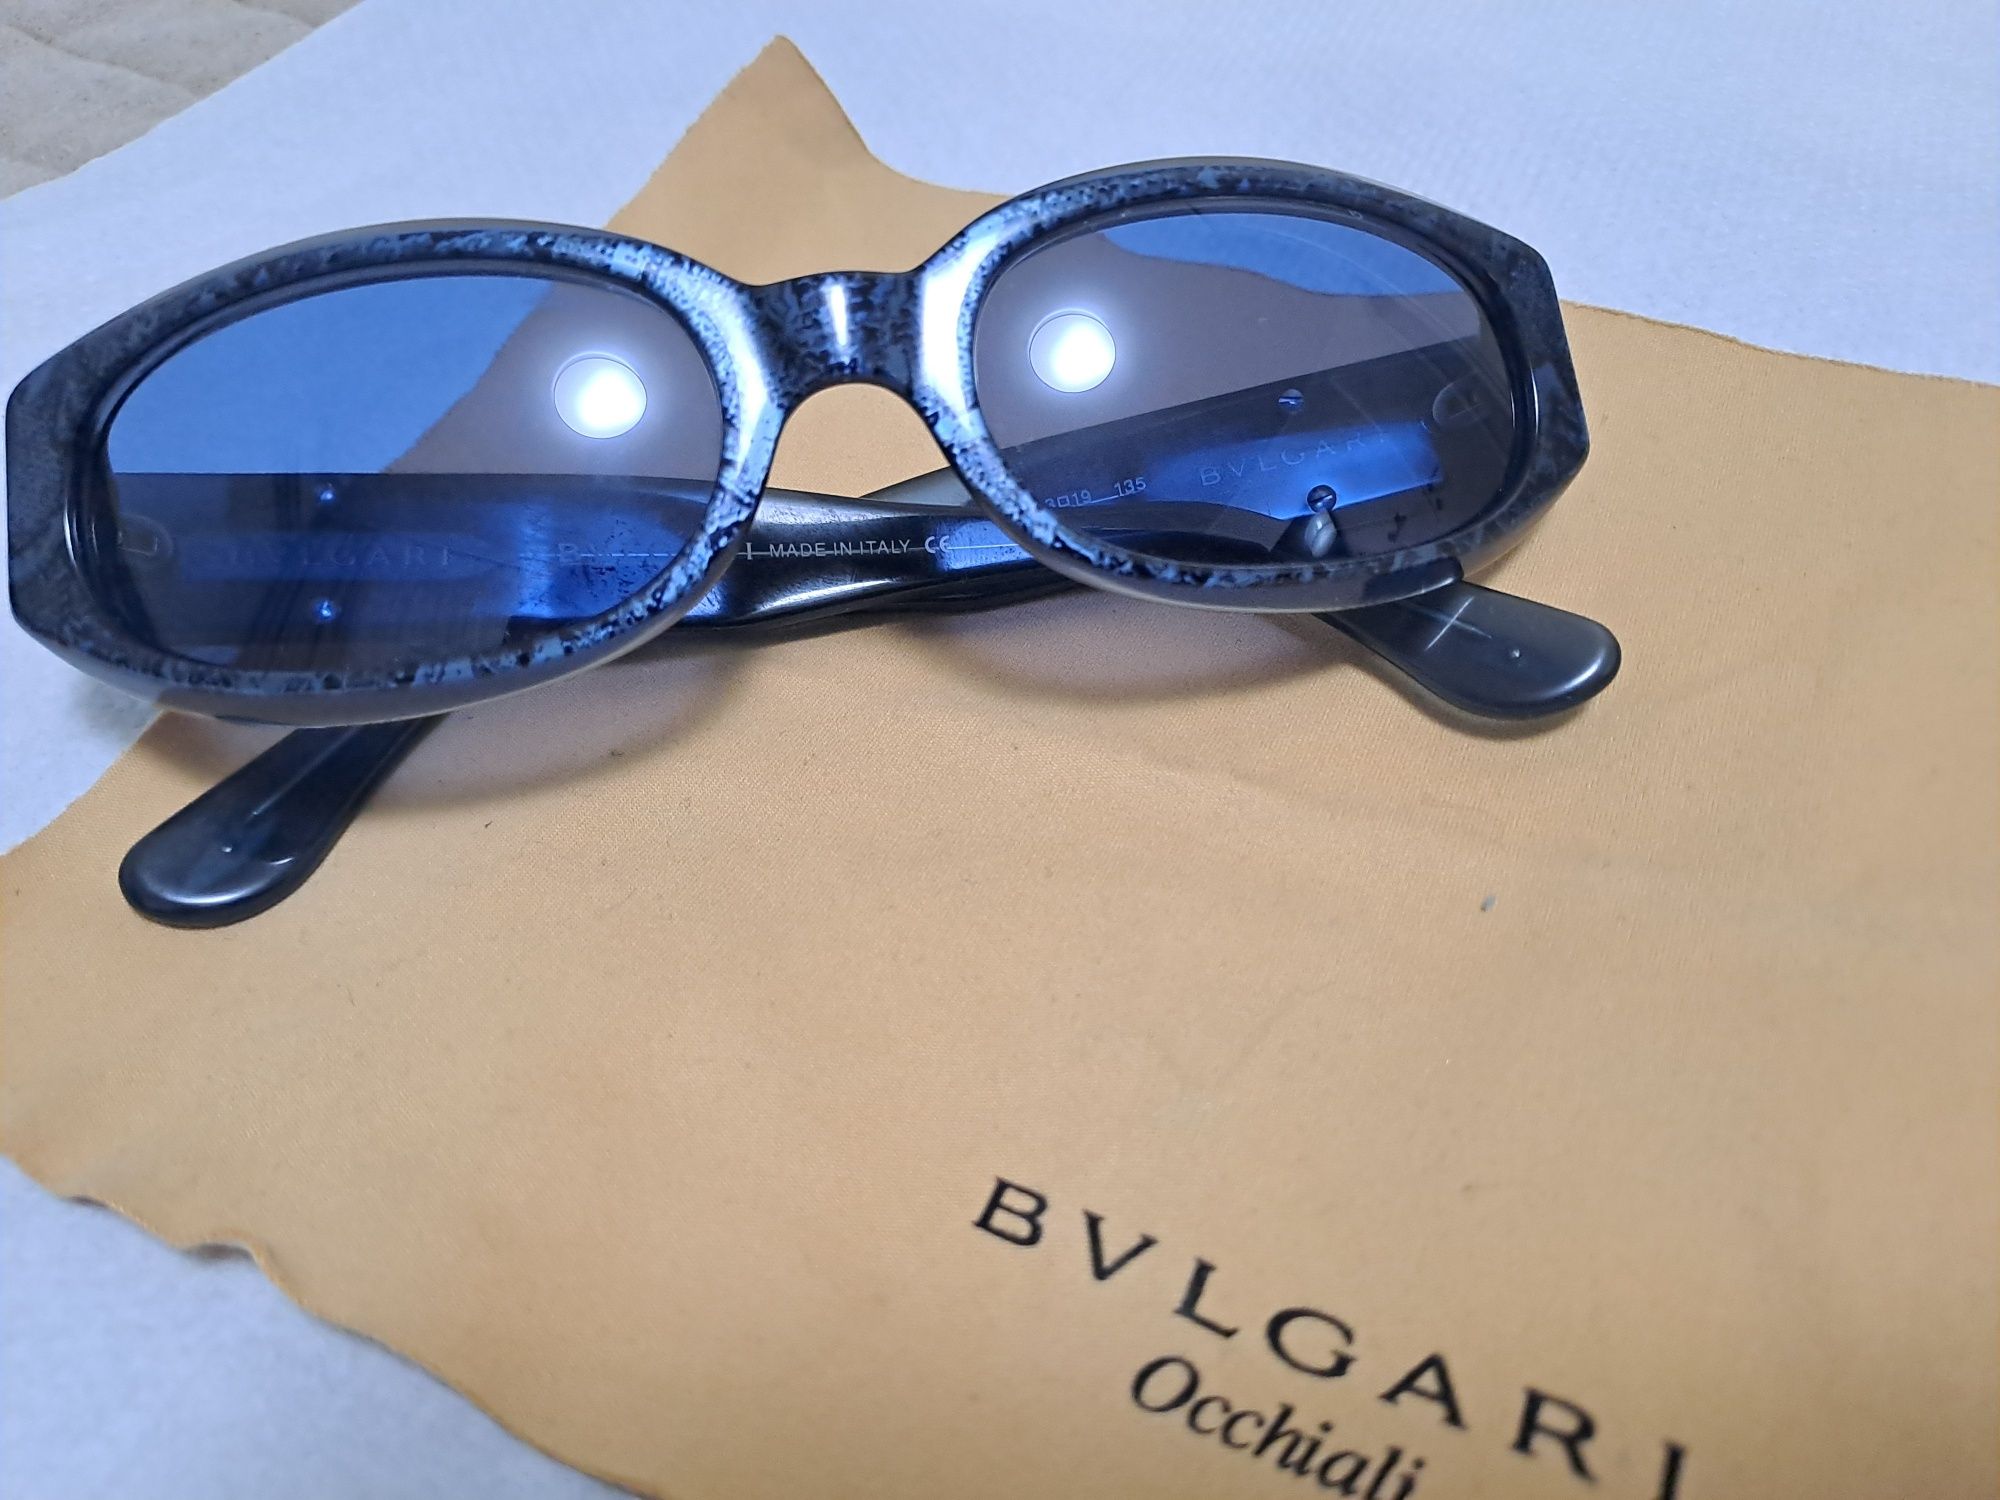 Ochelari vintage bvulgari , bulgari 822 580